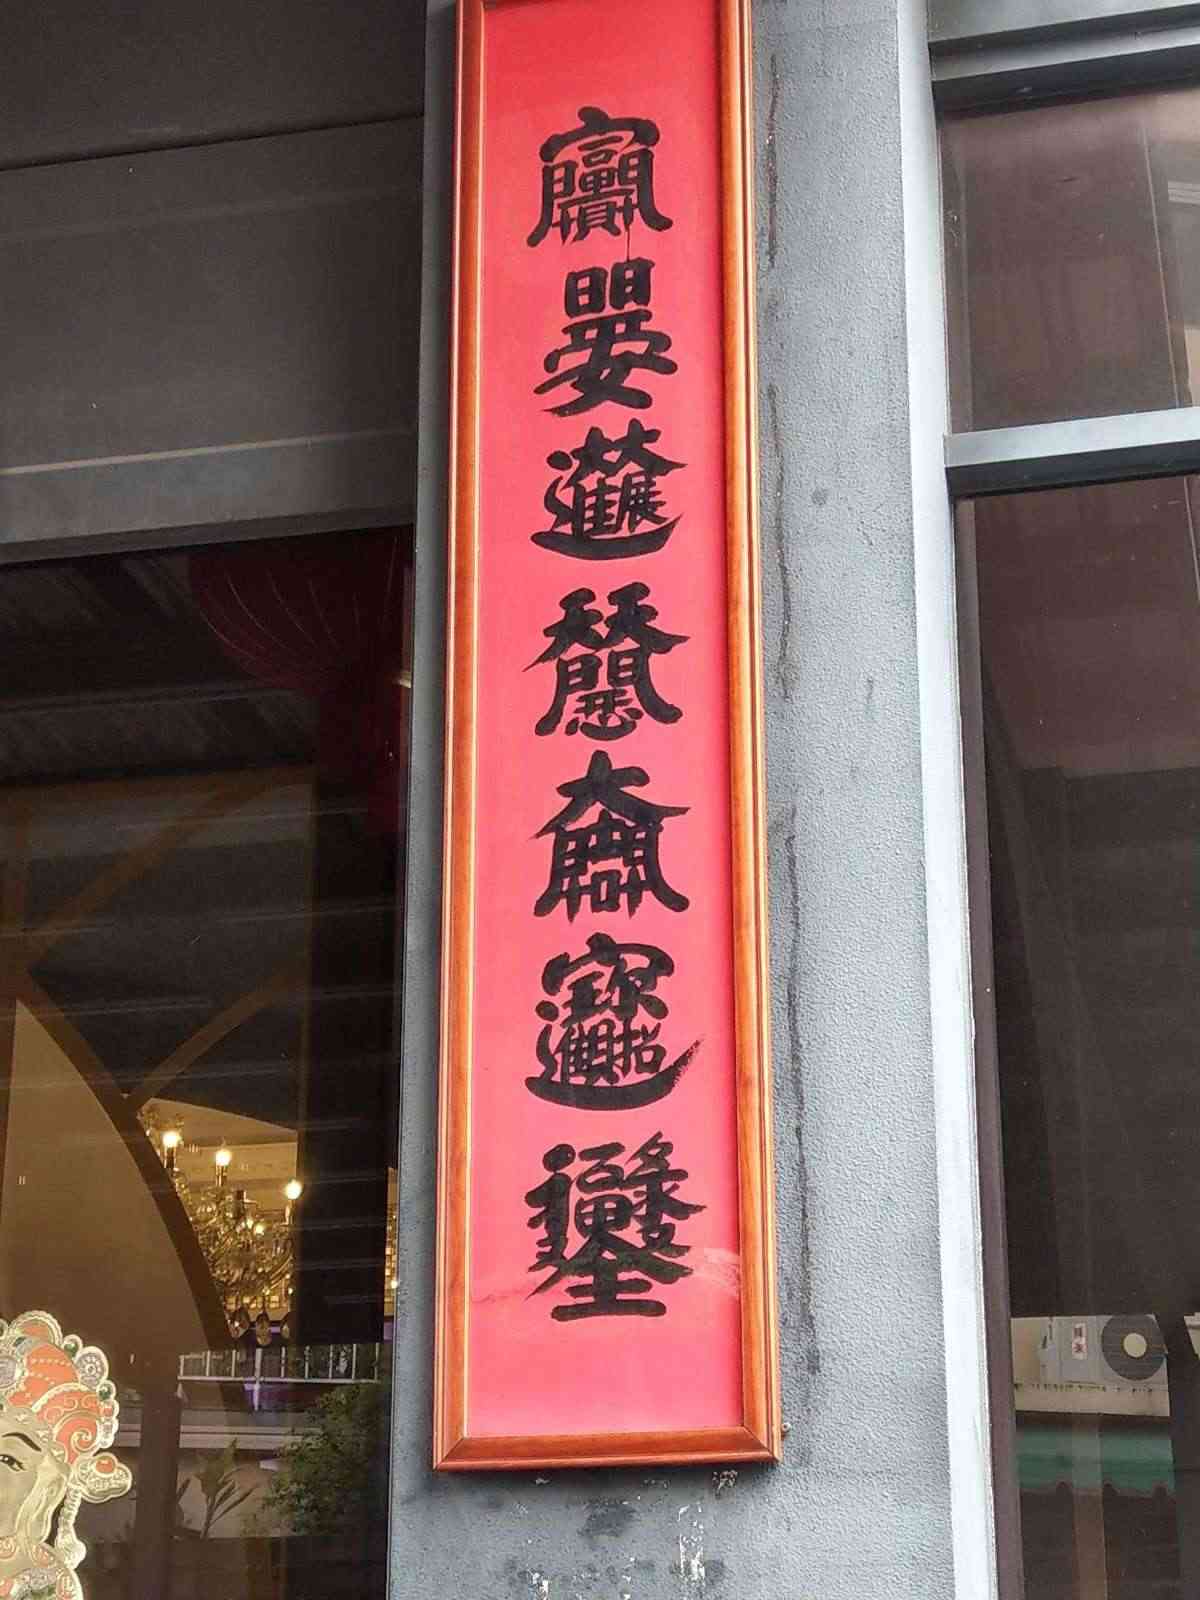 成都生活美食館/ 攝影者: 黃景祥

(由第三方資訊提供)